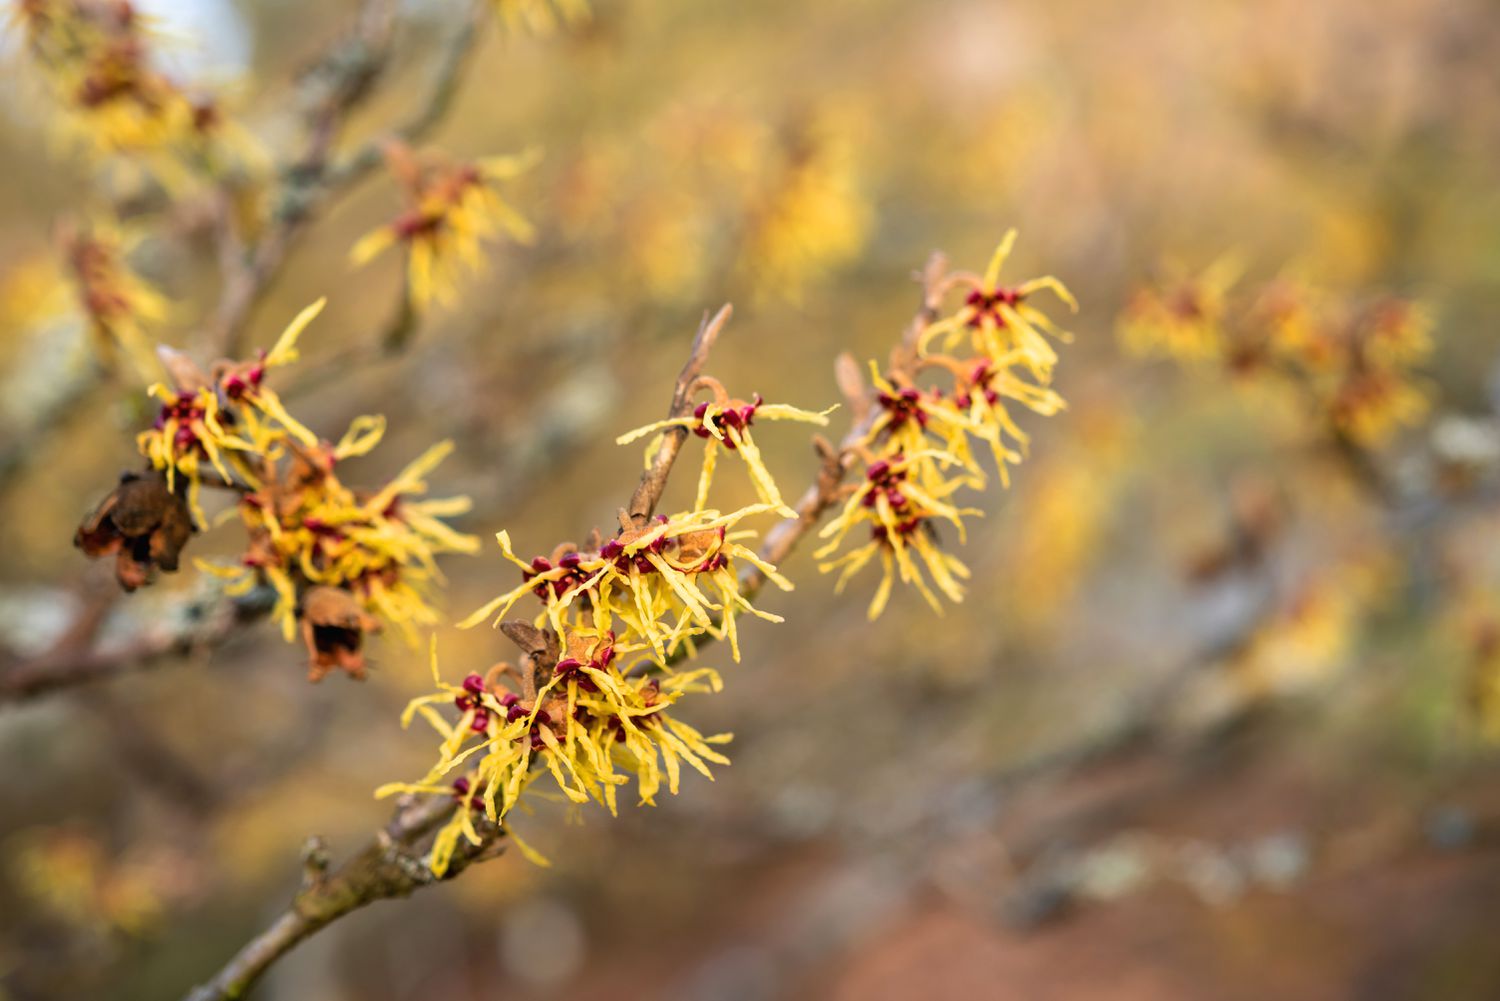 Galho de arbusto de hamamélis comum com flores amarelas em forma de franja